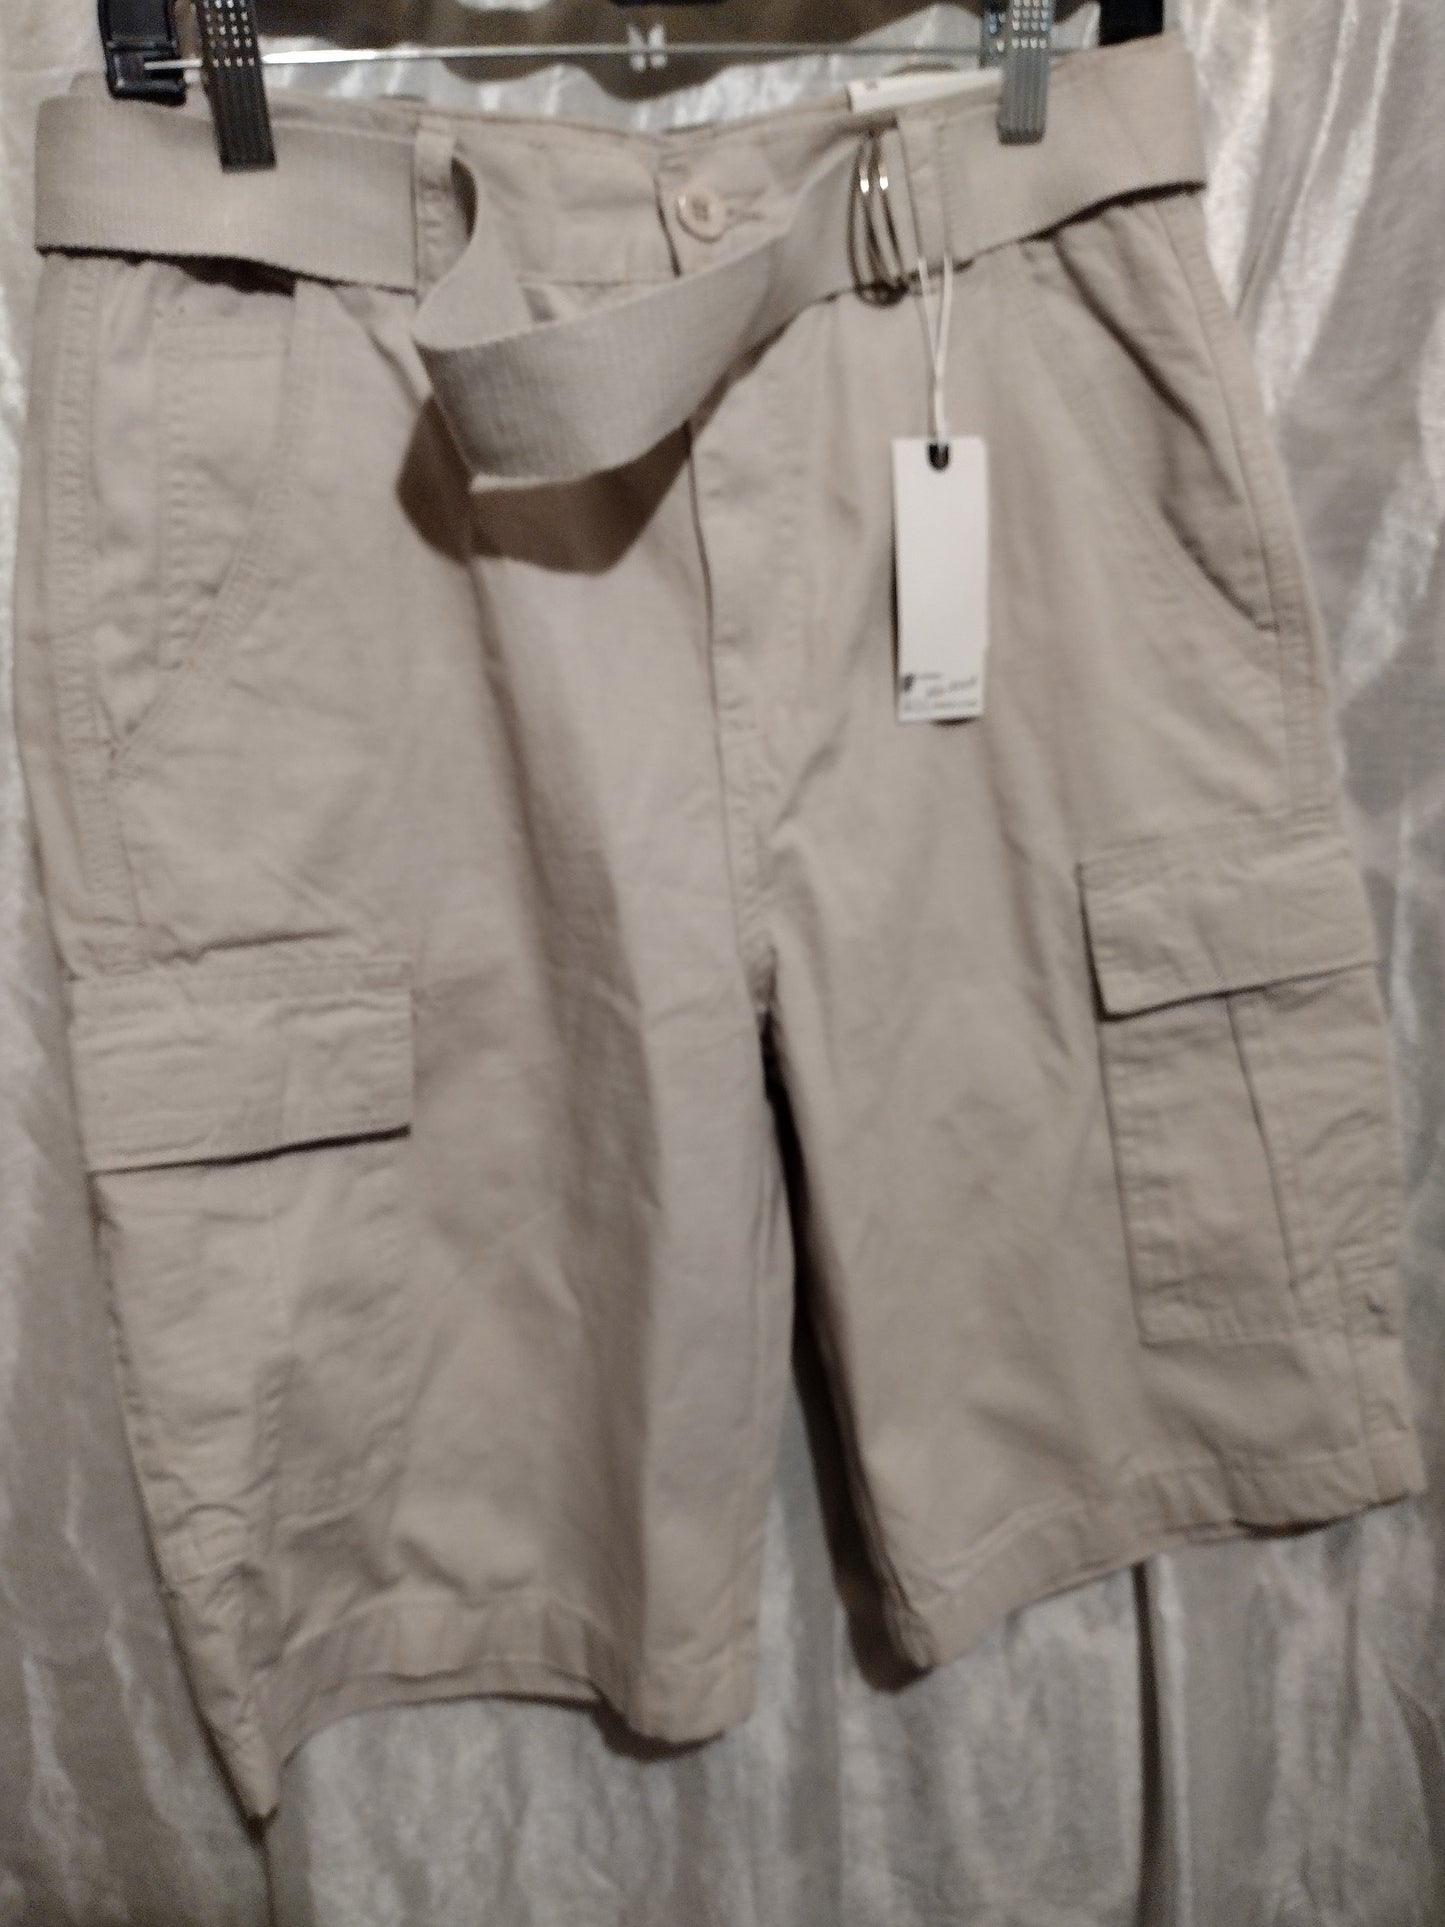 Men Cargo shorts size 30